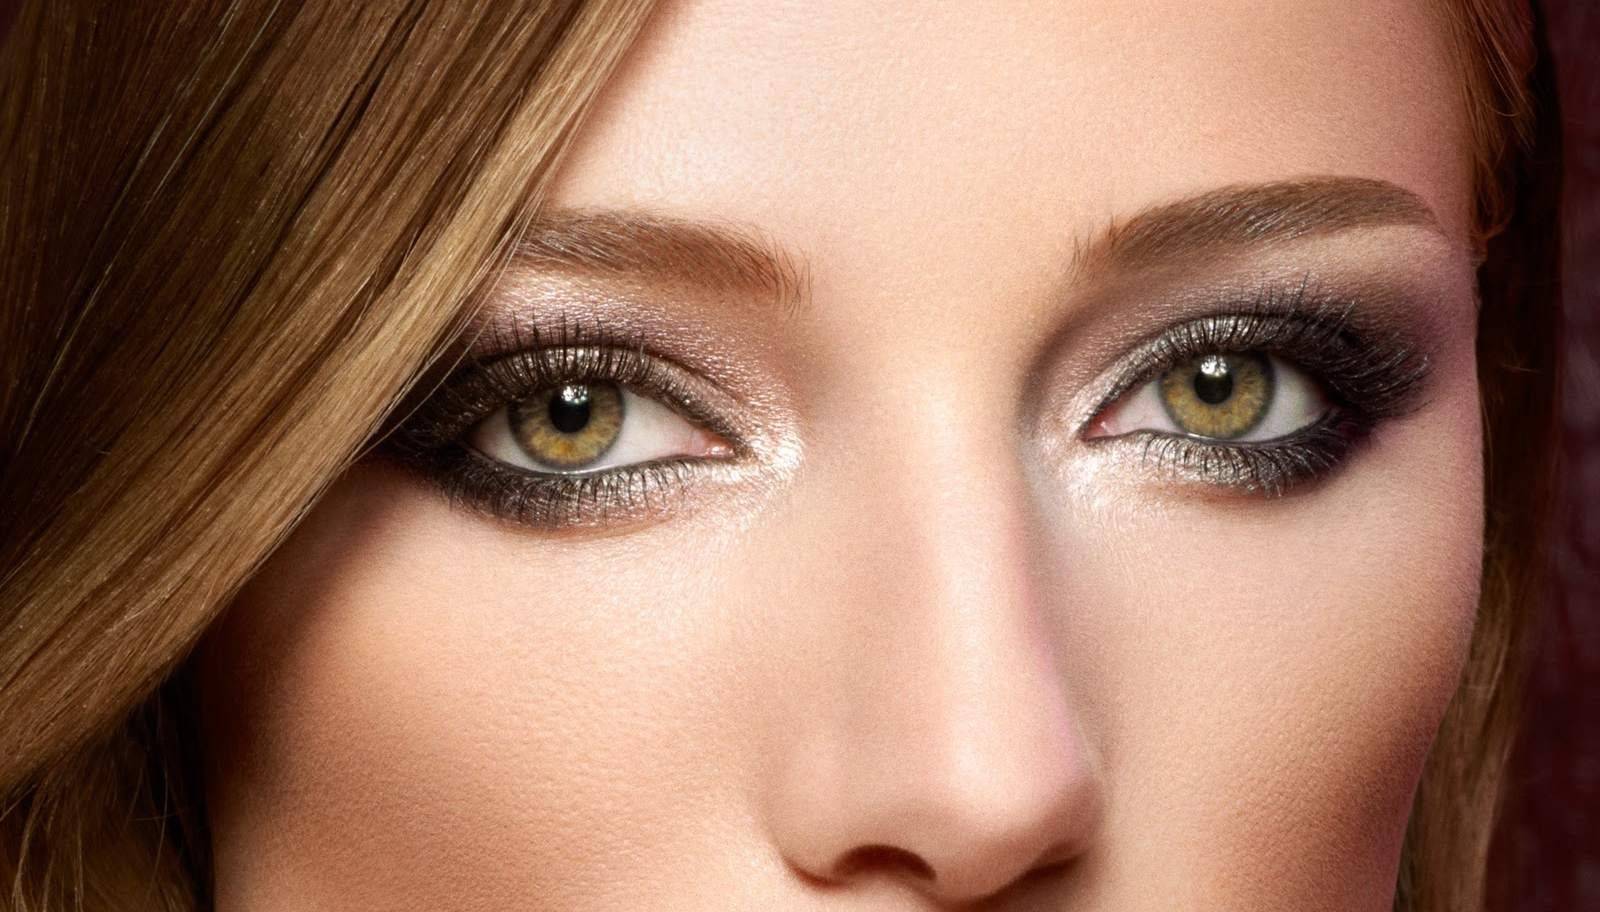 Свадебный макияж для зеленых глаз — шикарное оформление при разных сочетаниях + фото и видео